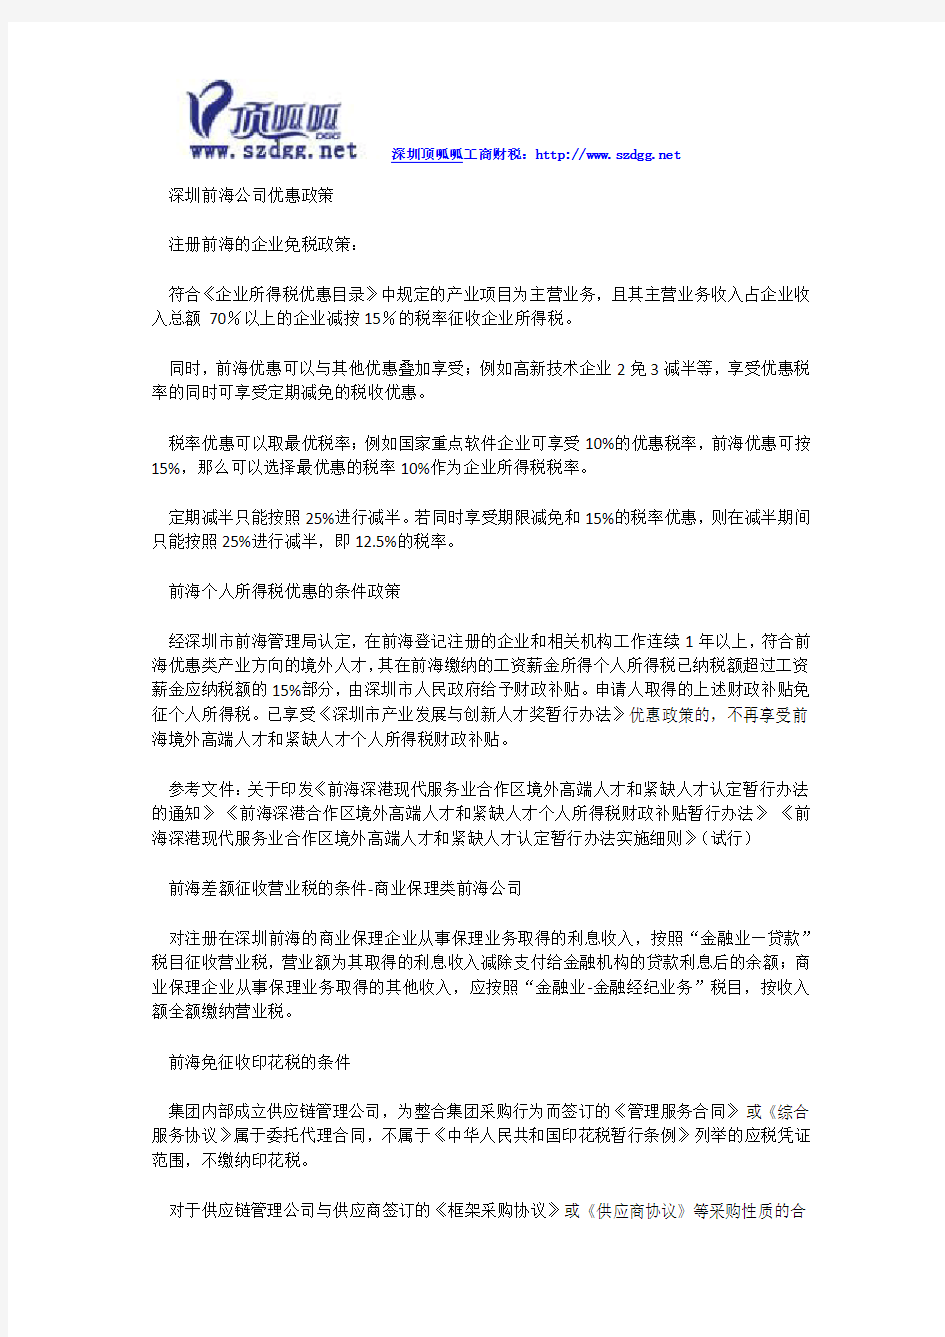 深圳前海公司优惠政策